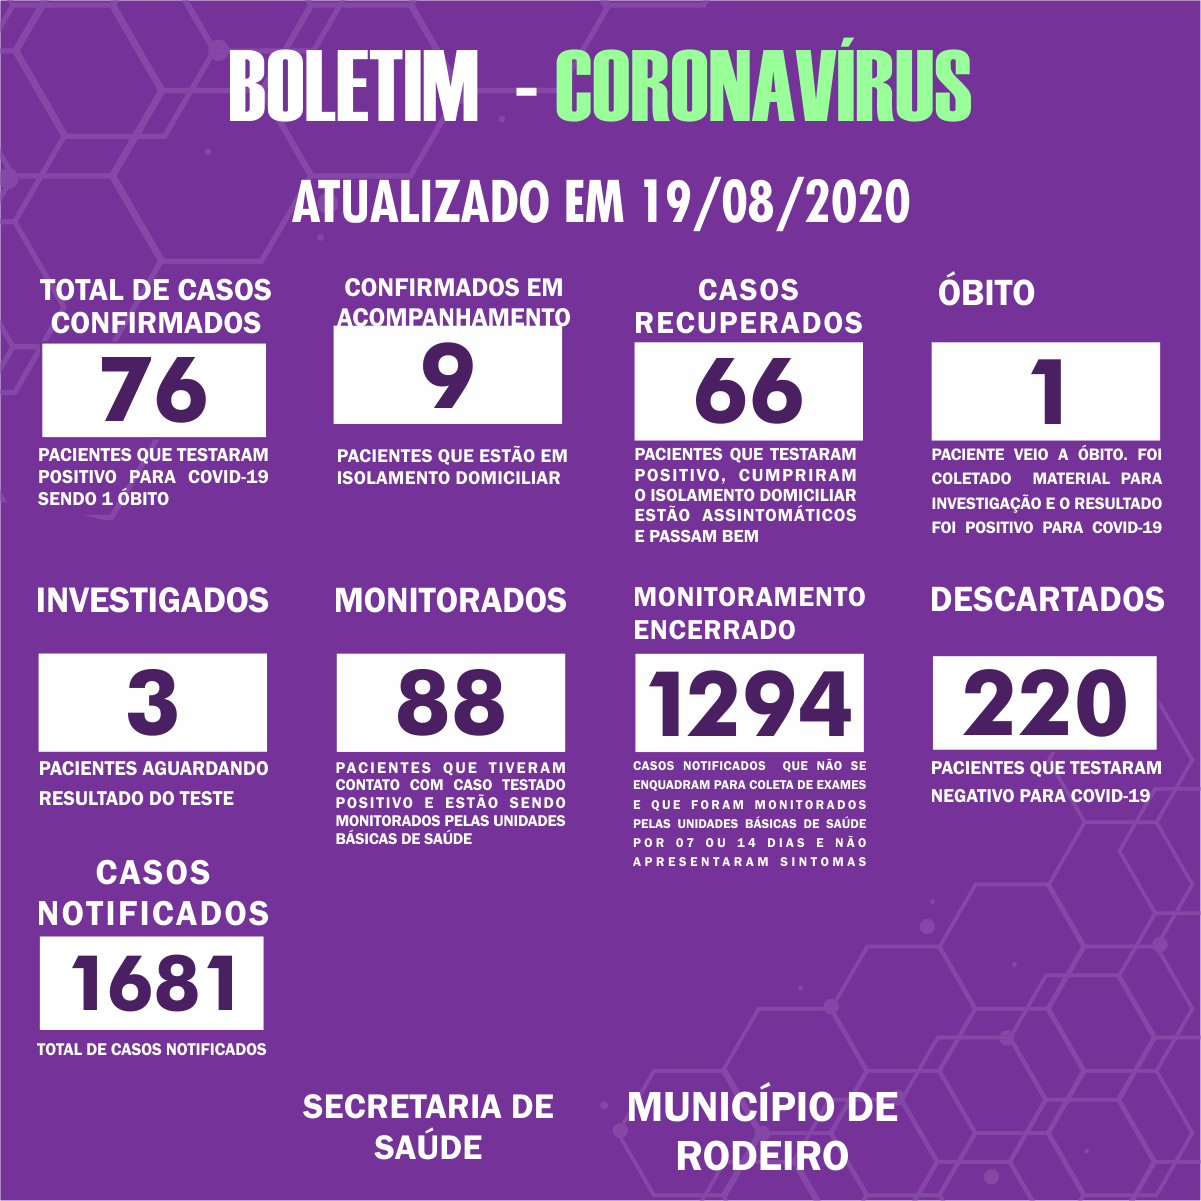 Boletim Epidemiológico do Município de Rodeiro sobre coronavírus, atualizado em 19/08/2020